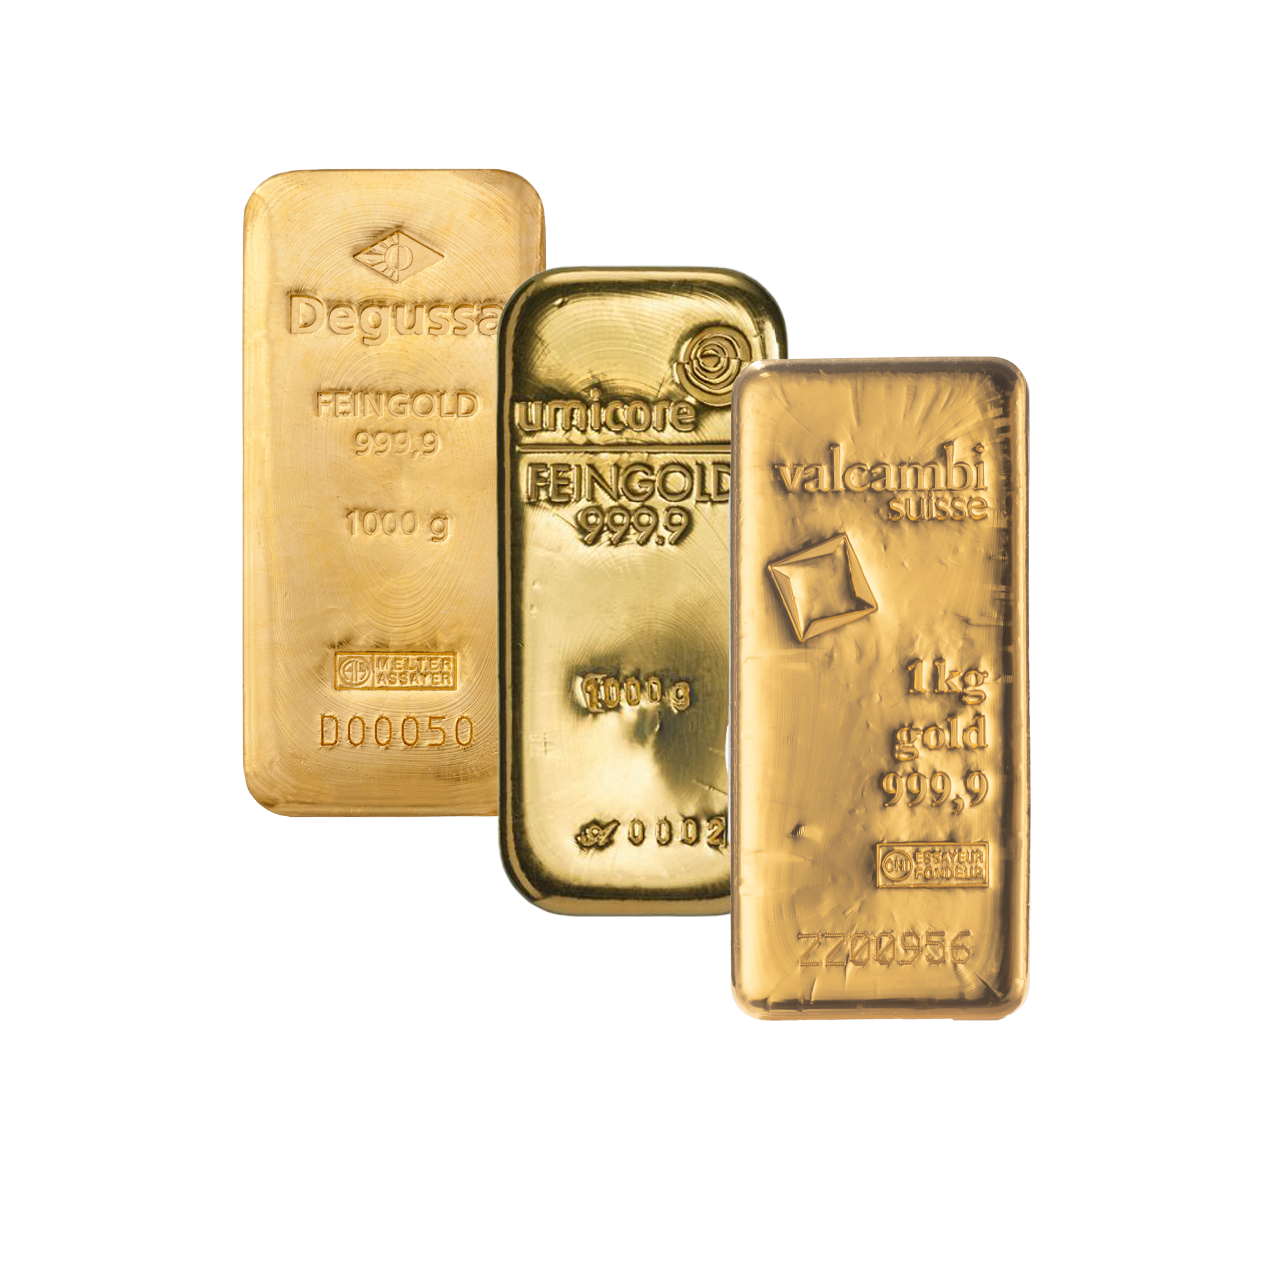 Gold Bar - 1 kg fine gold .9999 - various brands